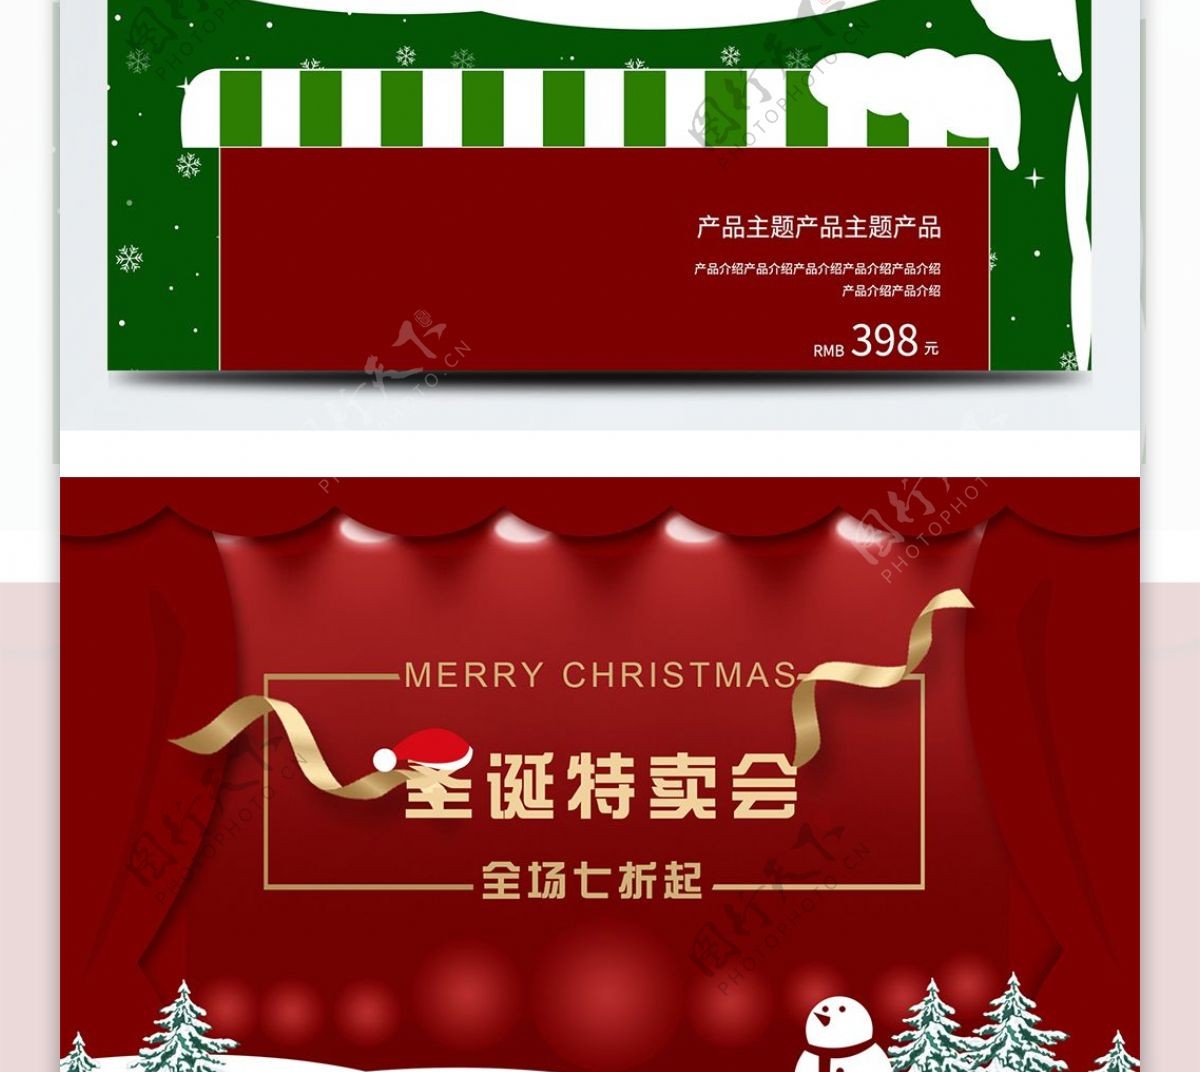 红绿圣诞节电商淘宝天猫促销活动首页